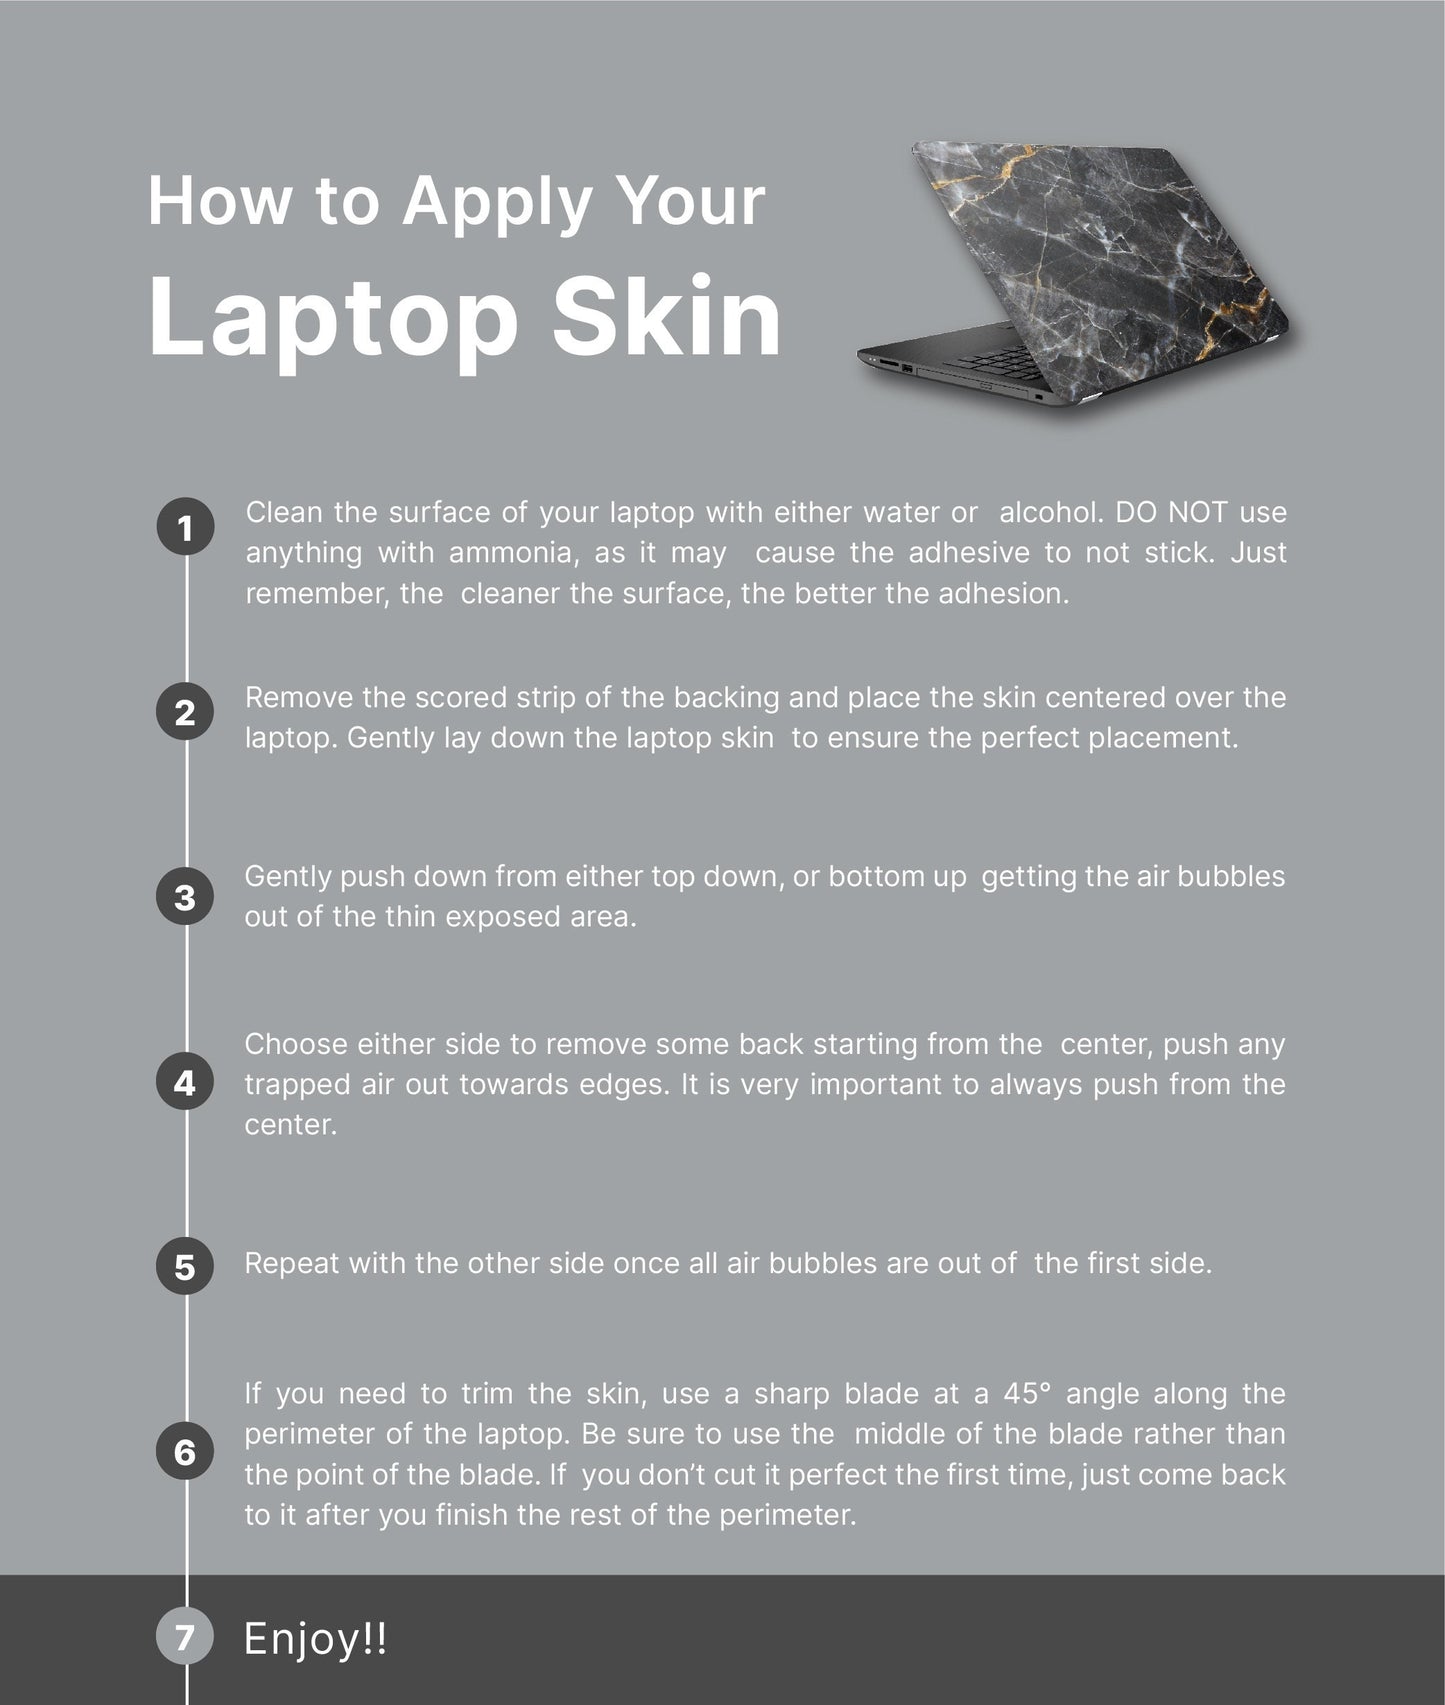 Boho Sunset Laptop Skin, Laptop Cover, Laptop Skins, Removable Laptop Skins, Laptop Decal, Customized Laptop Skin, Laptop Stickers 155